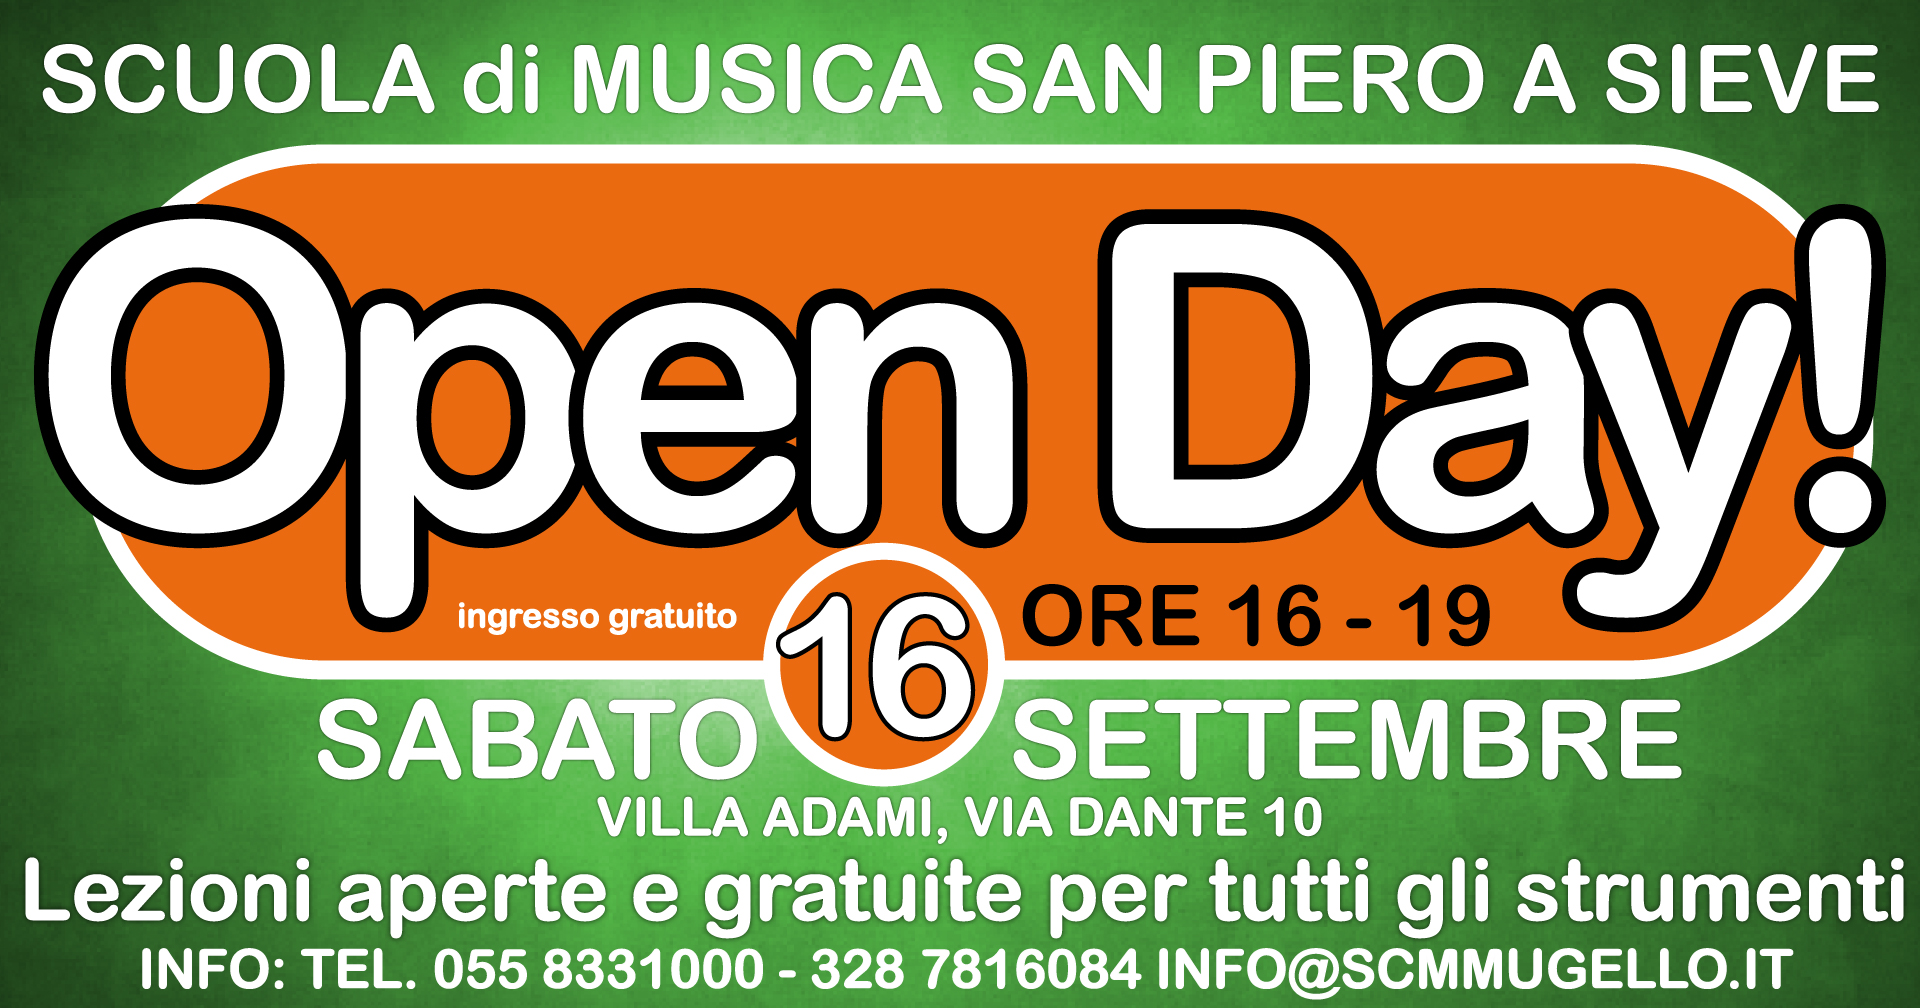 Open Day San Piero a Sieve Sabato 16 Settembre 2017 ore 16-19